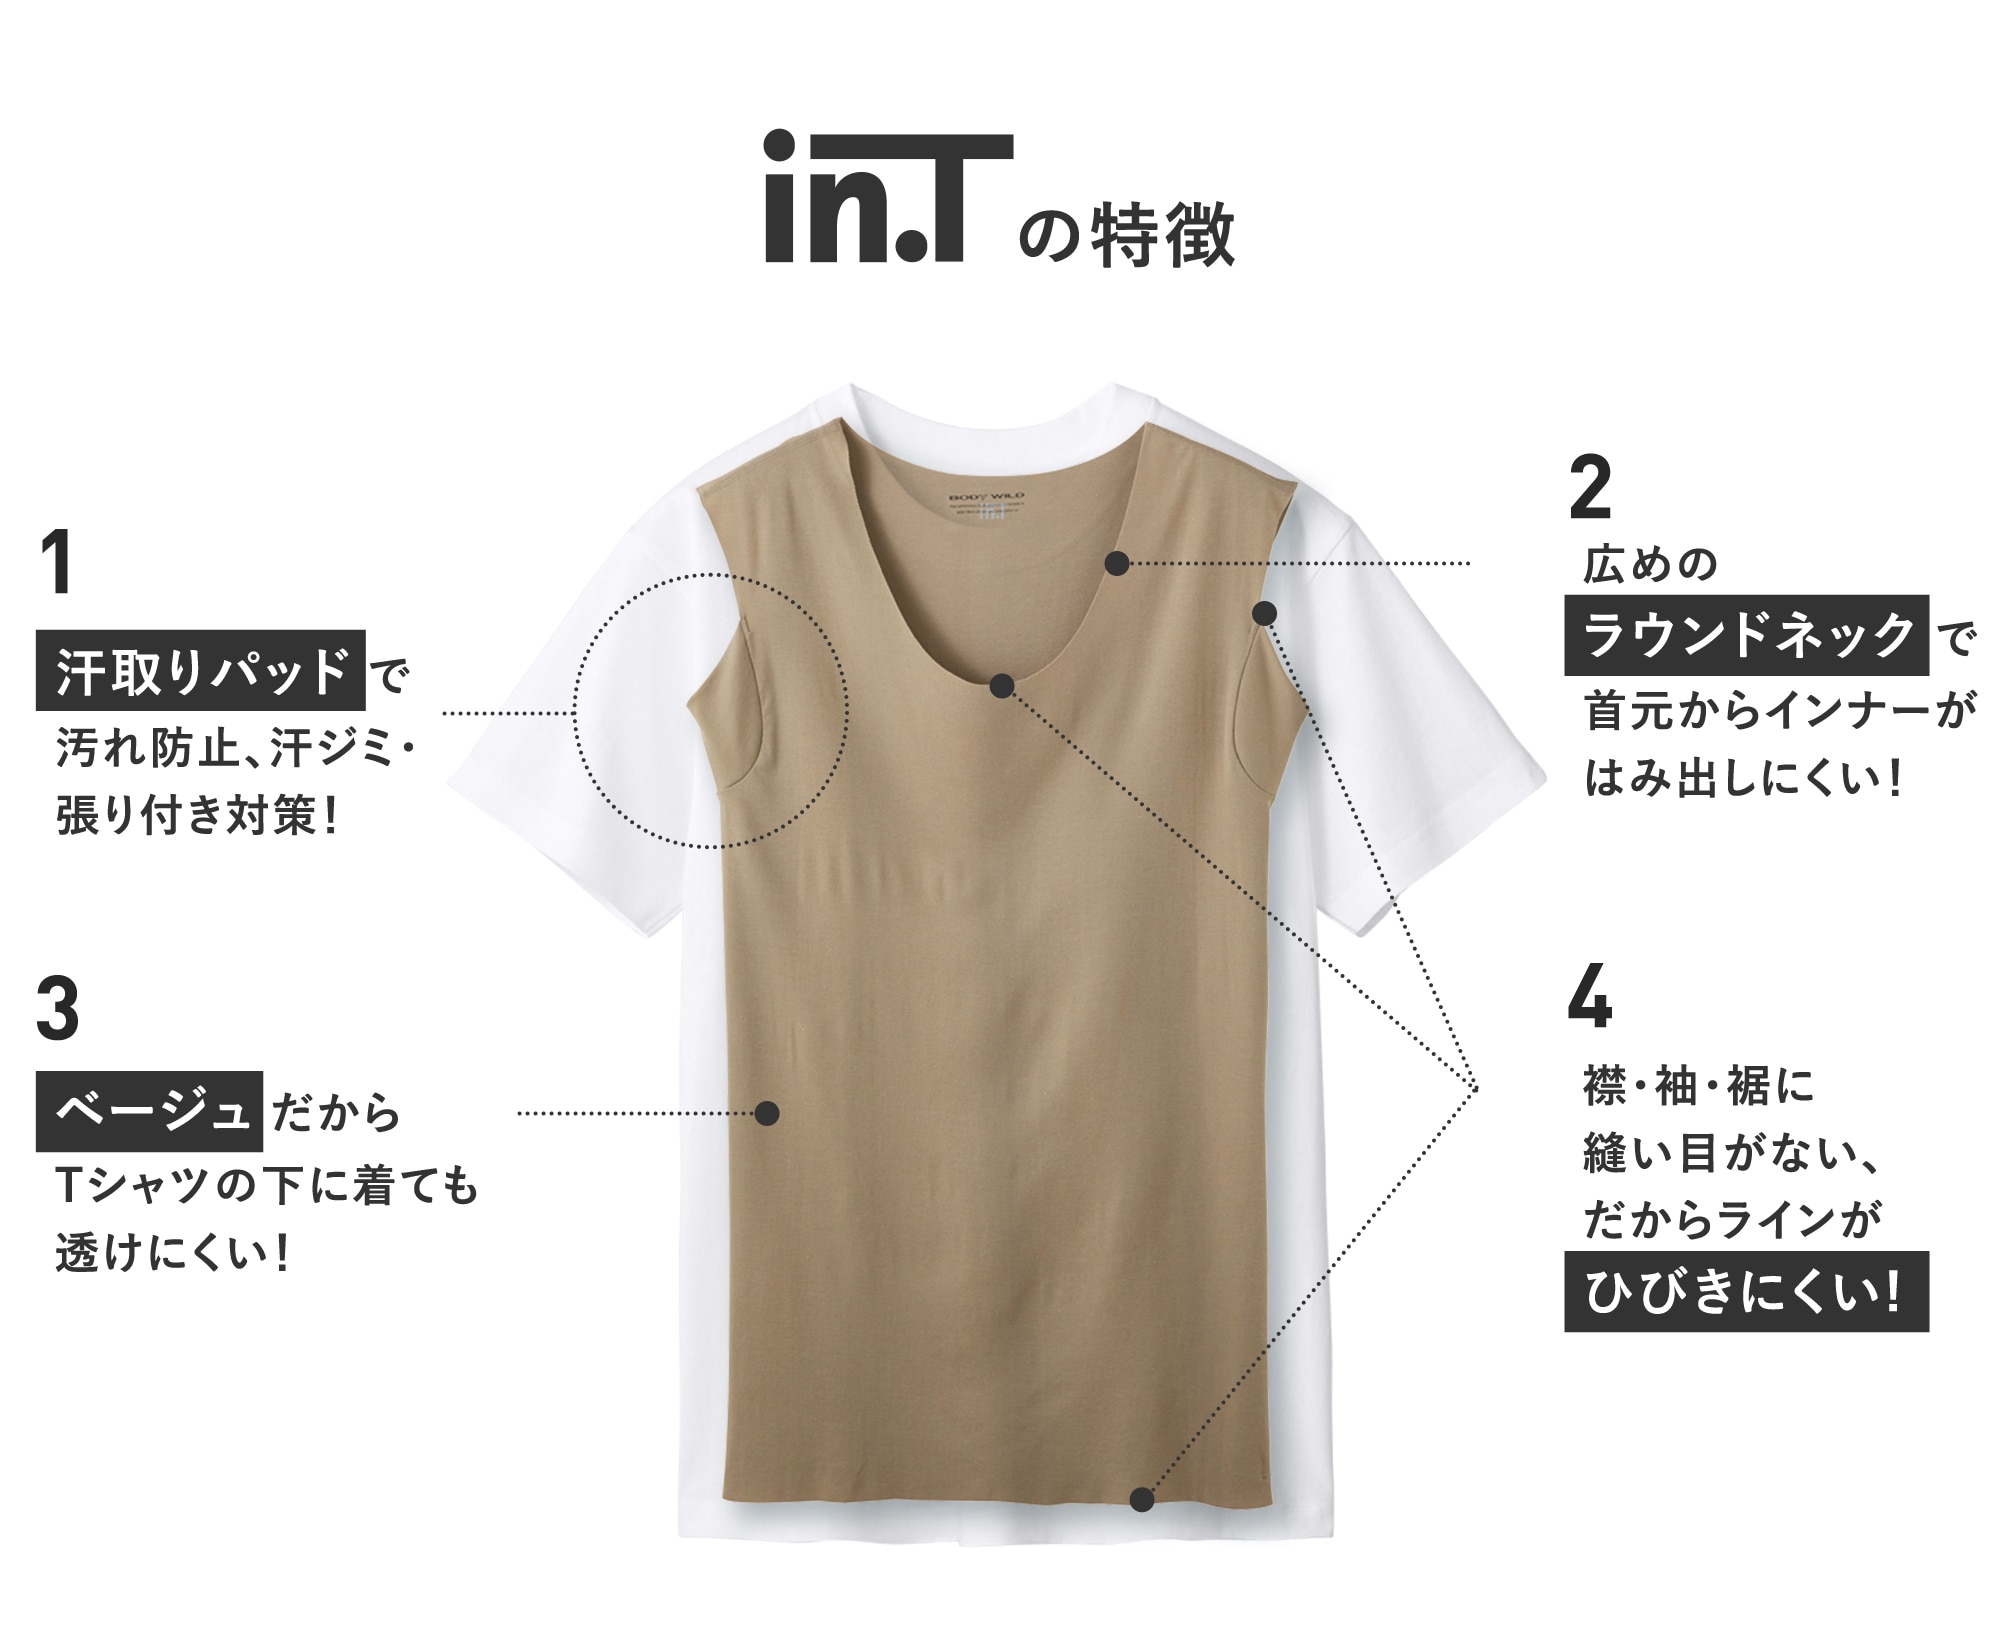 Tシャツスタイルの不満解消をサポートする、『in.T』の細部